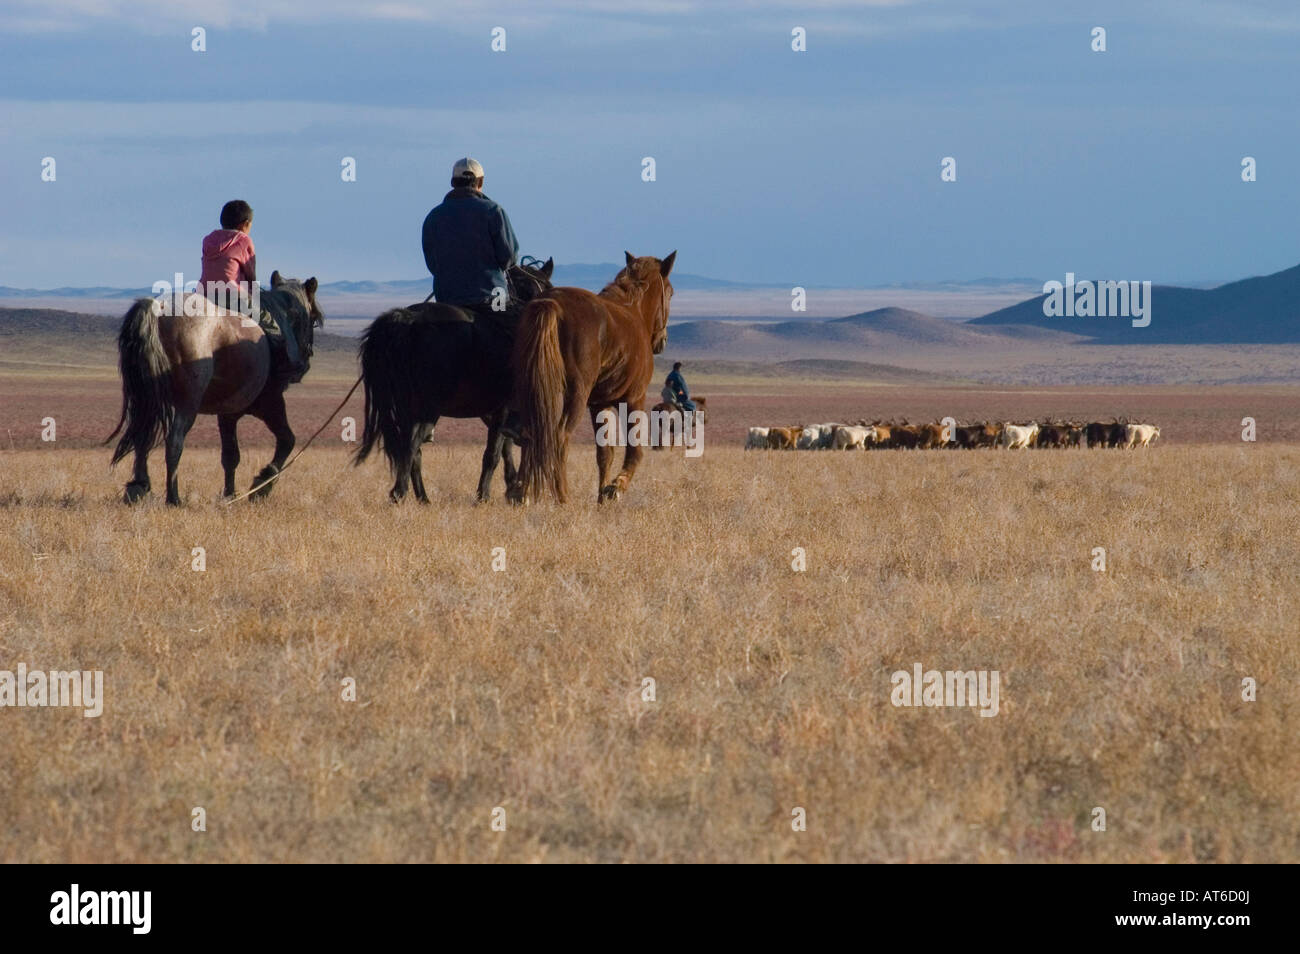 Herding Schönheit Landschaft blauer Himmel Tourismus exotisches Reiseziel Kultur Nomad Mongolei mongolischen Steppe Cowboy Remotestandort öffnen Stockfoto